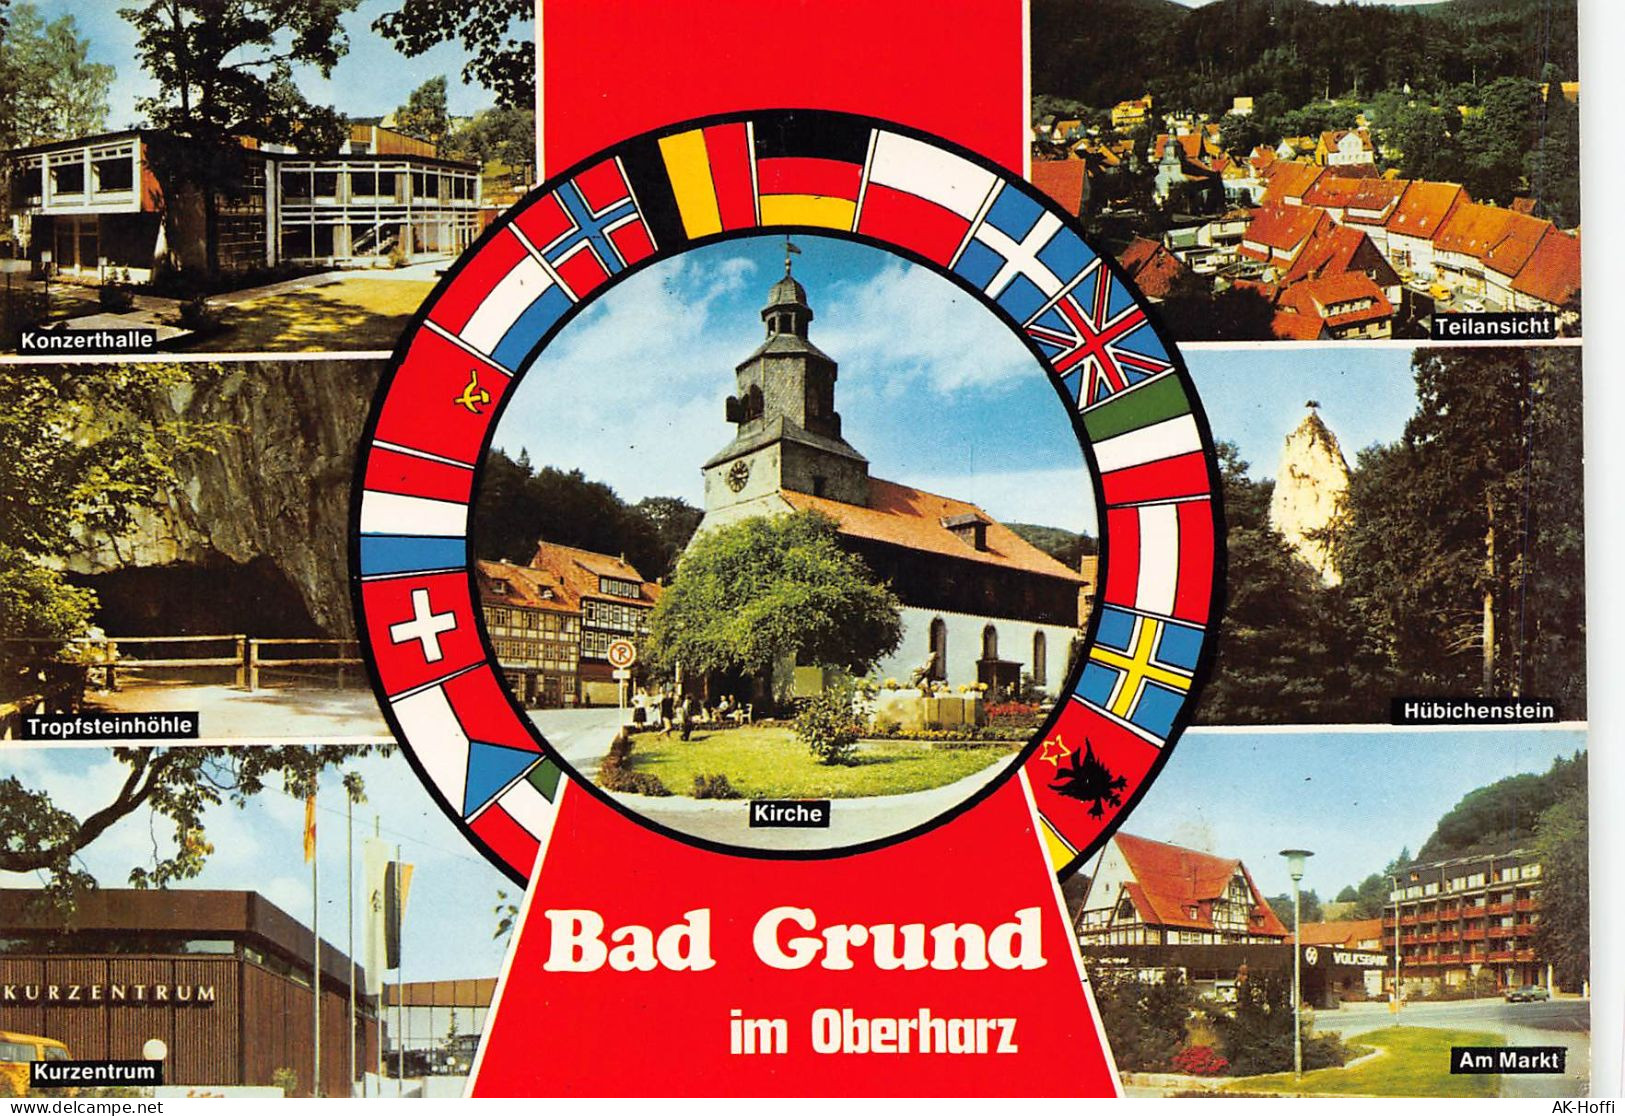 Bad Grund Im Oberharz - Am Markt, Konzerthalle, Hübichenstein, Tropfsteinhöhle, Kurzentrum - Bad Grund